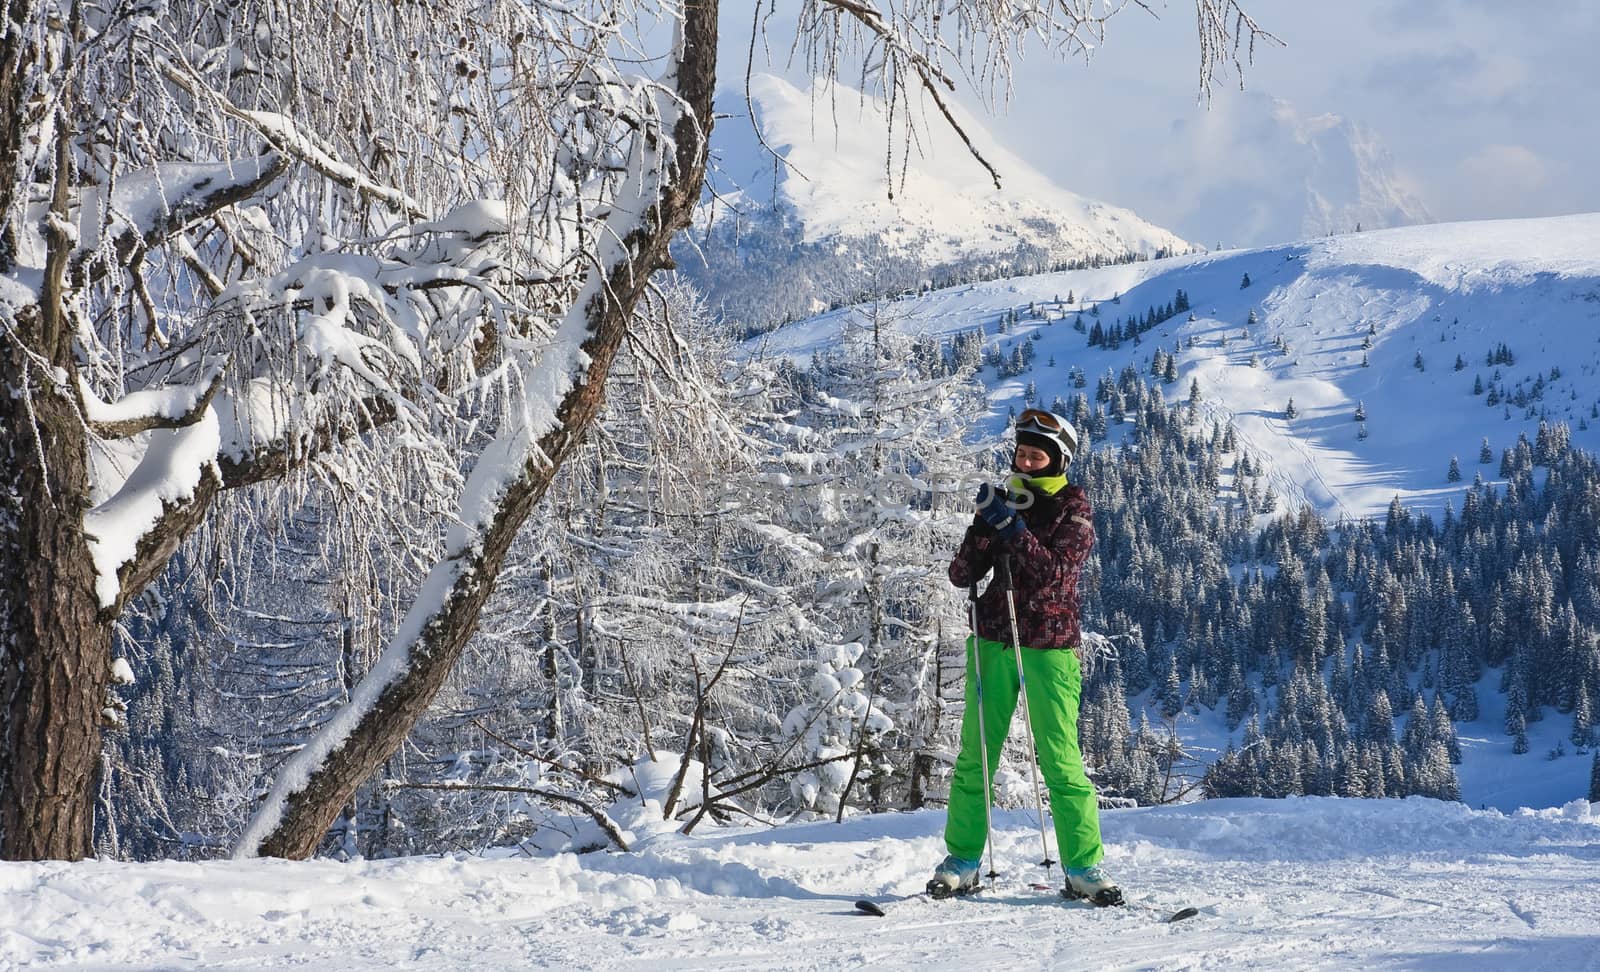 Alpine skier. Ski resort of Selva di Val Gardena, Italy